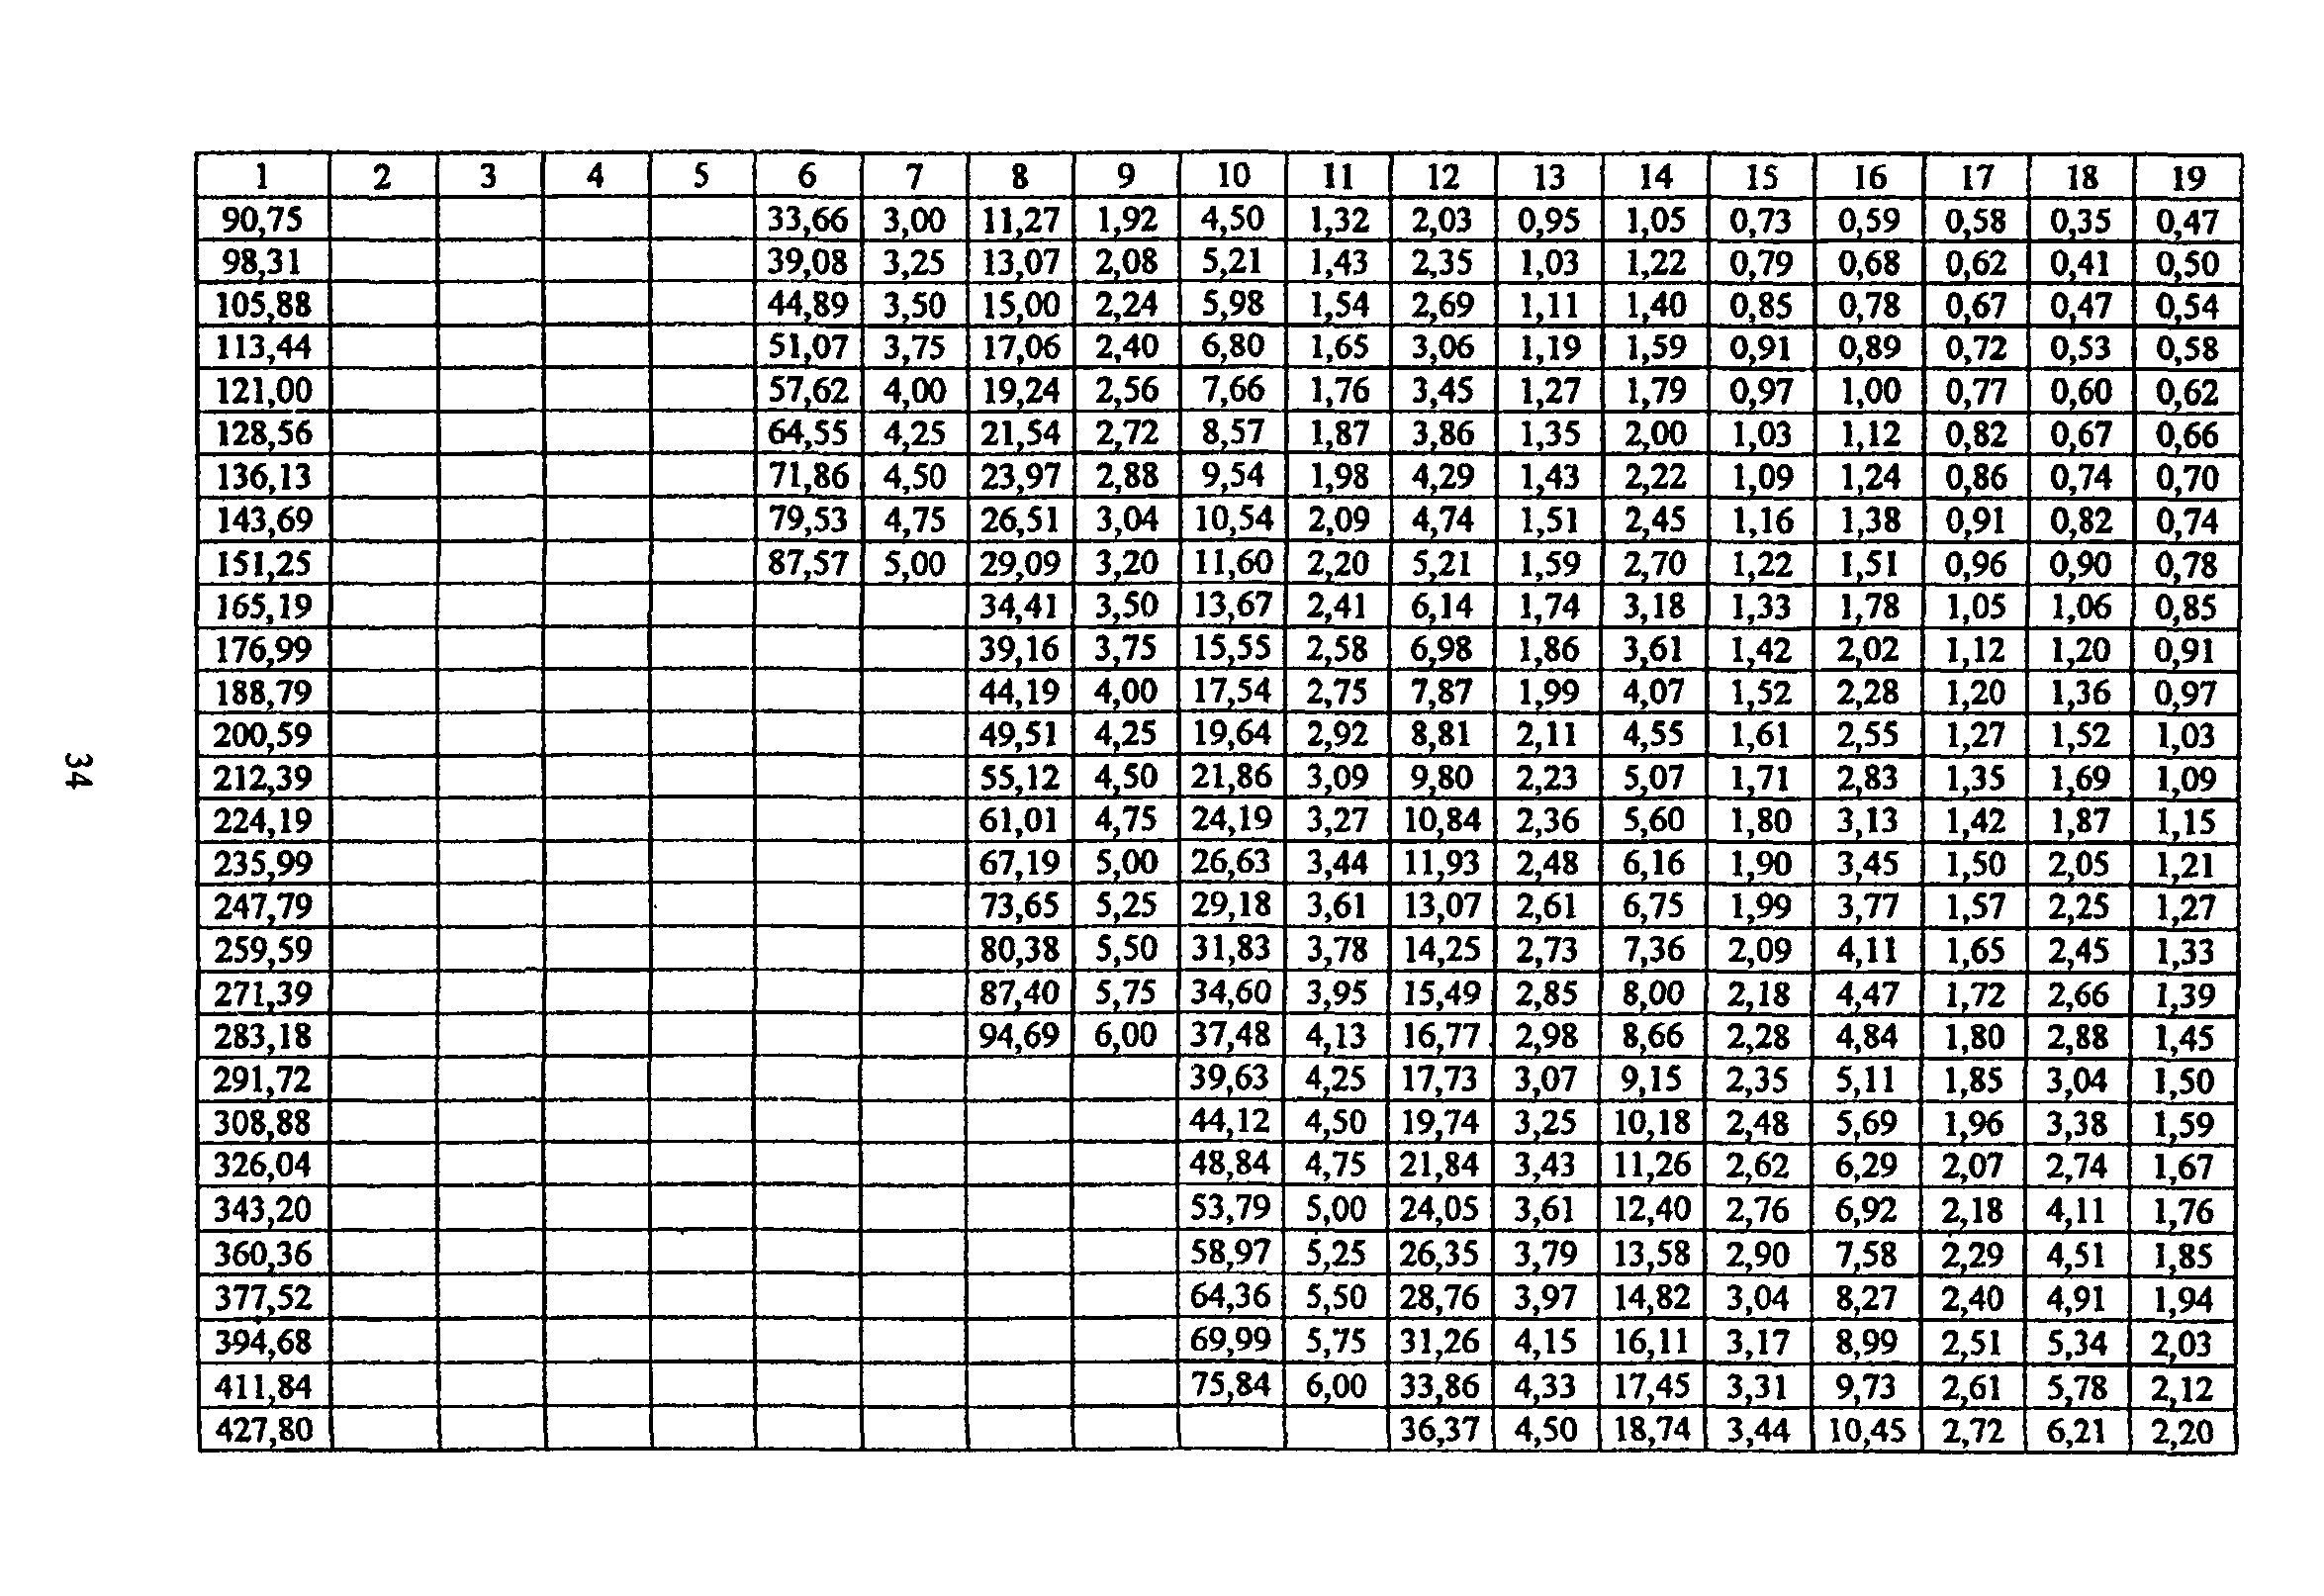 ТР 170-05